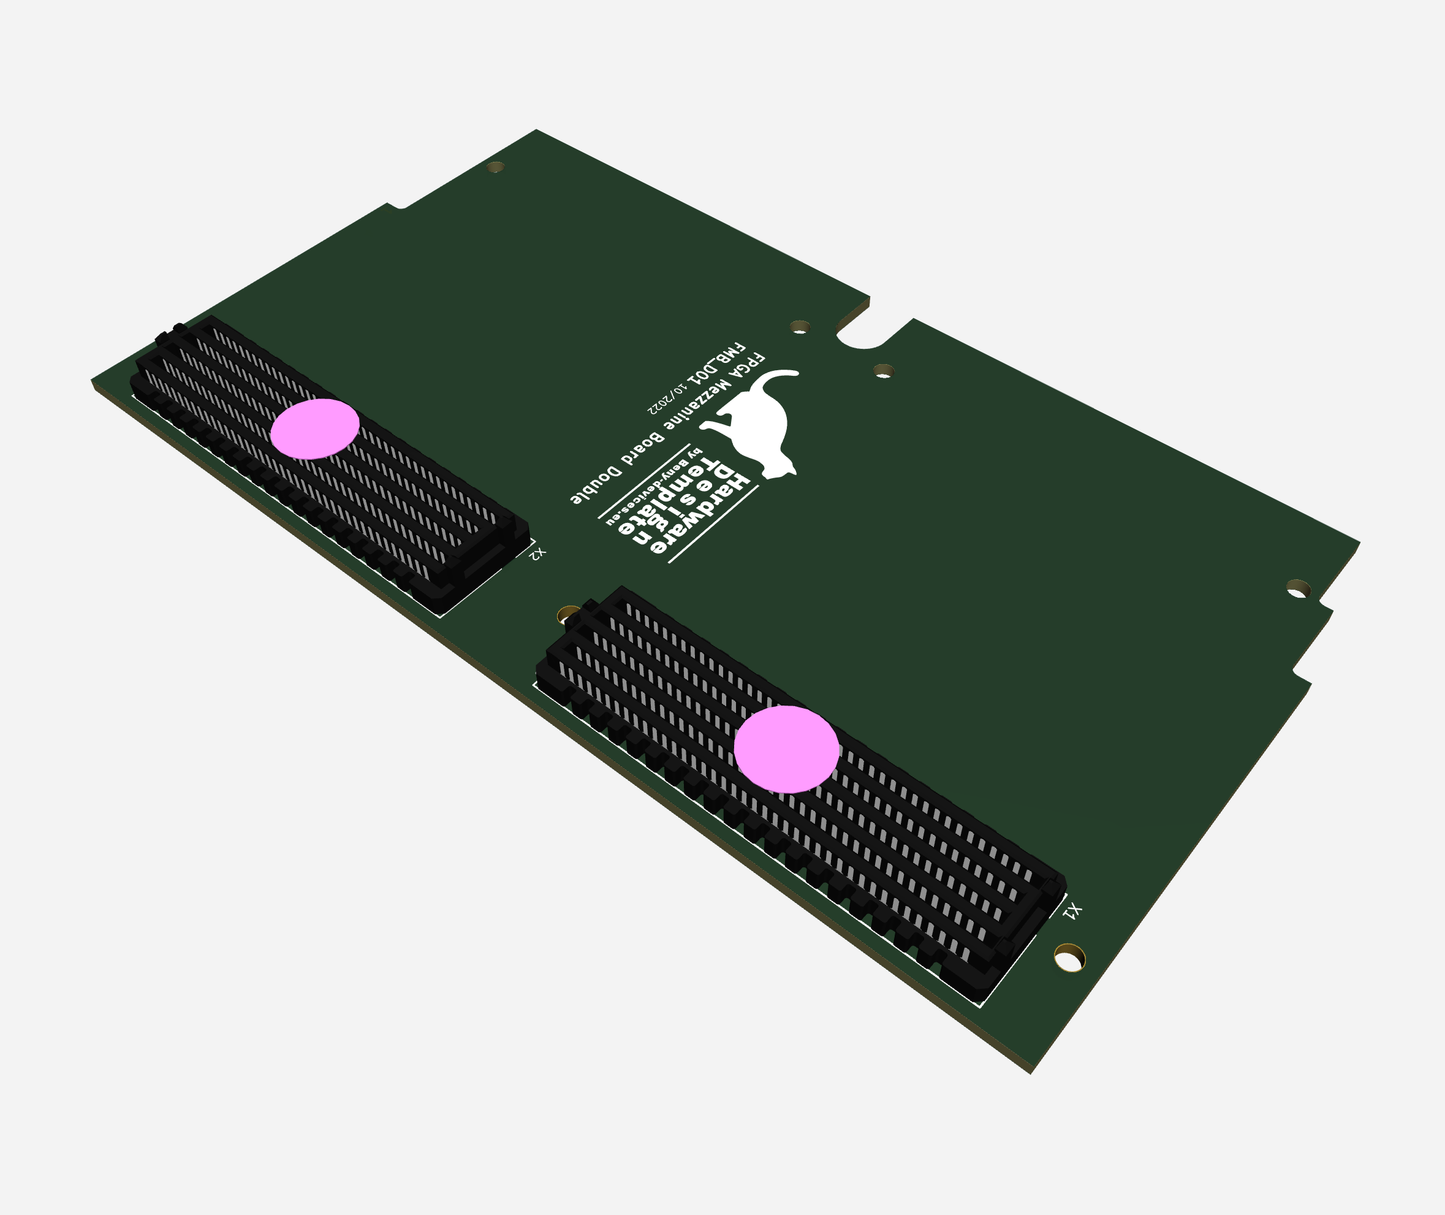 FPGA Mezzanine dual